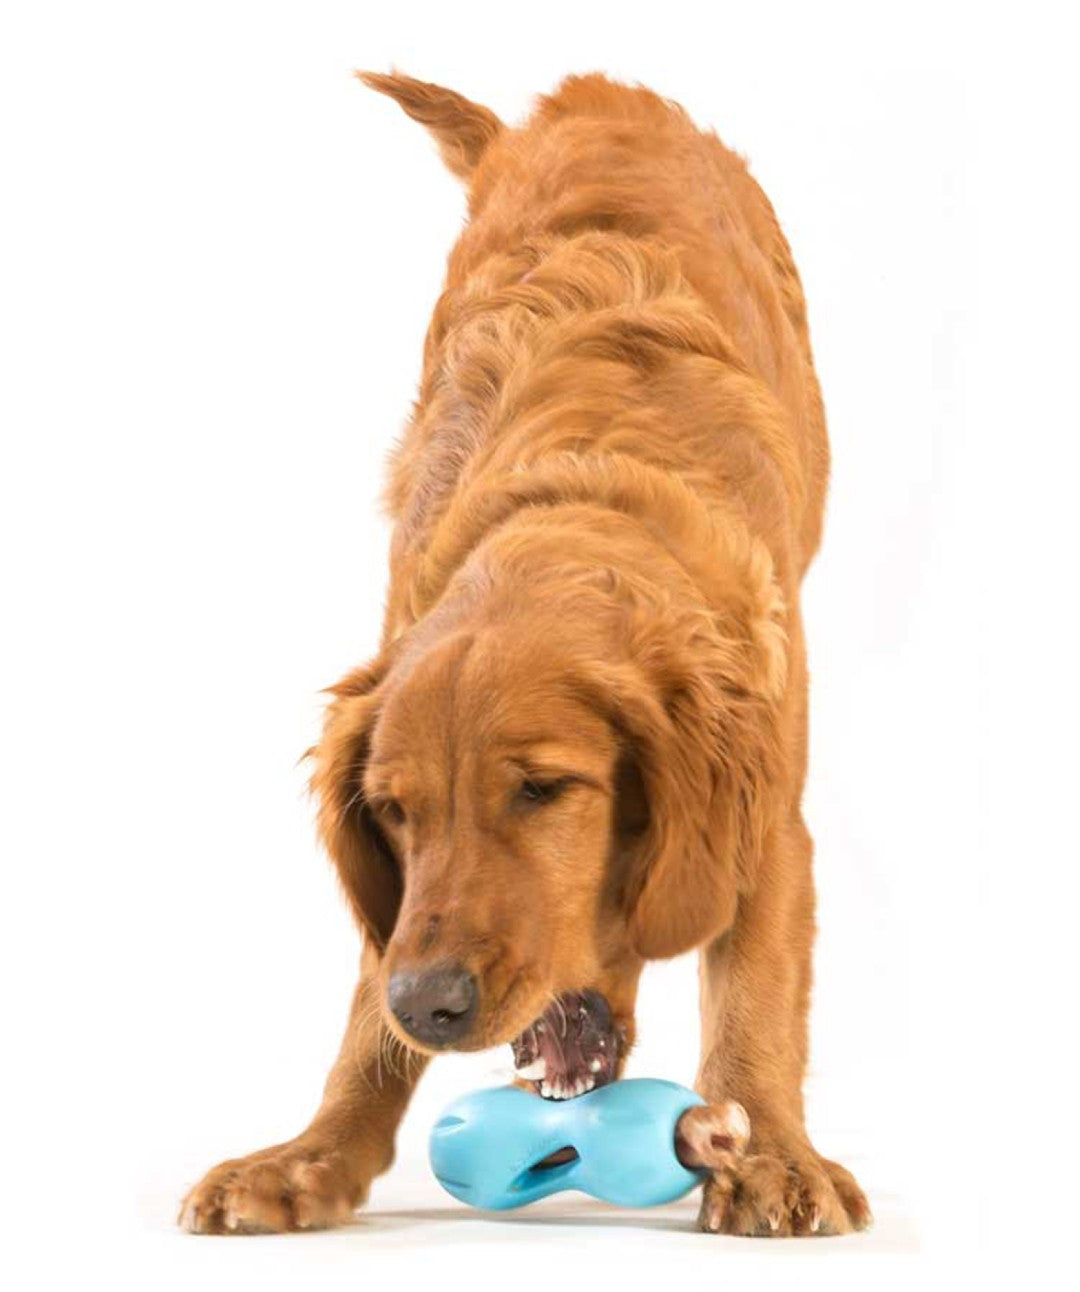 West Paw Zogoflex Qwizl Dog Puzzle Treat Toy – Interactive Chew